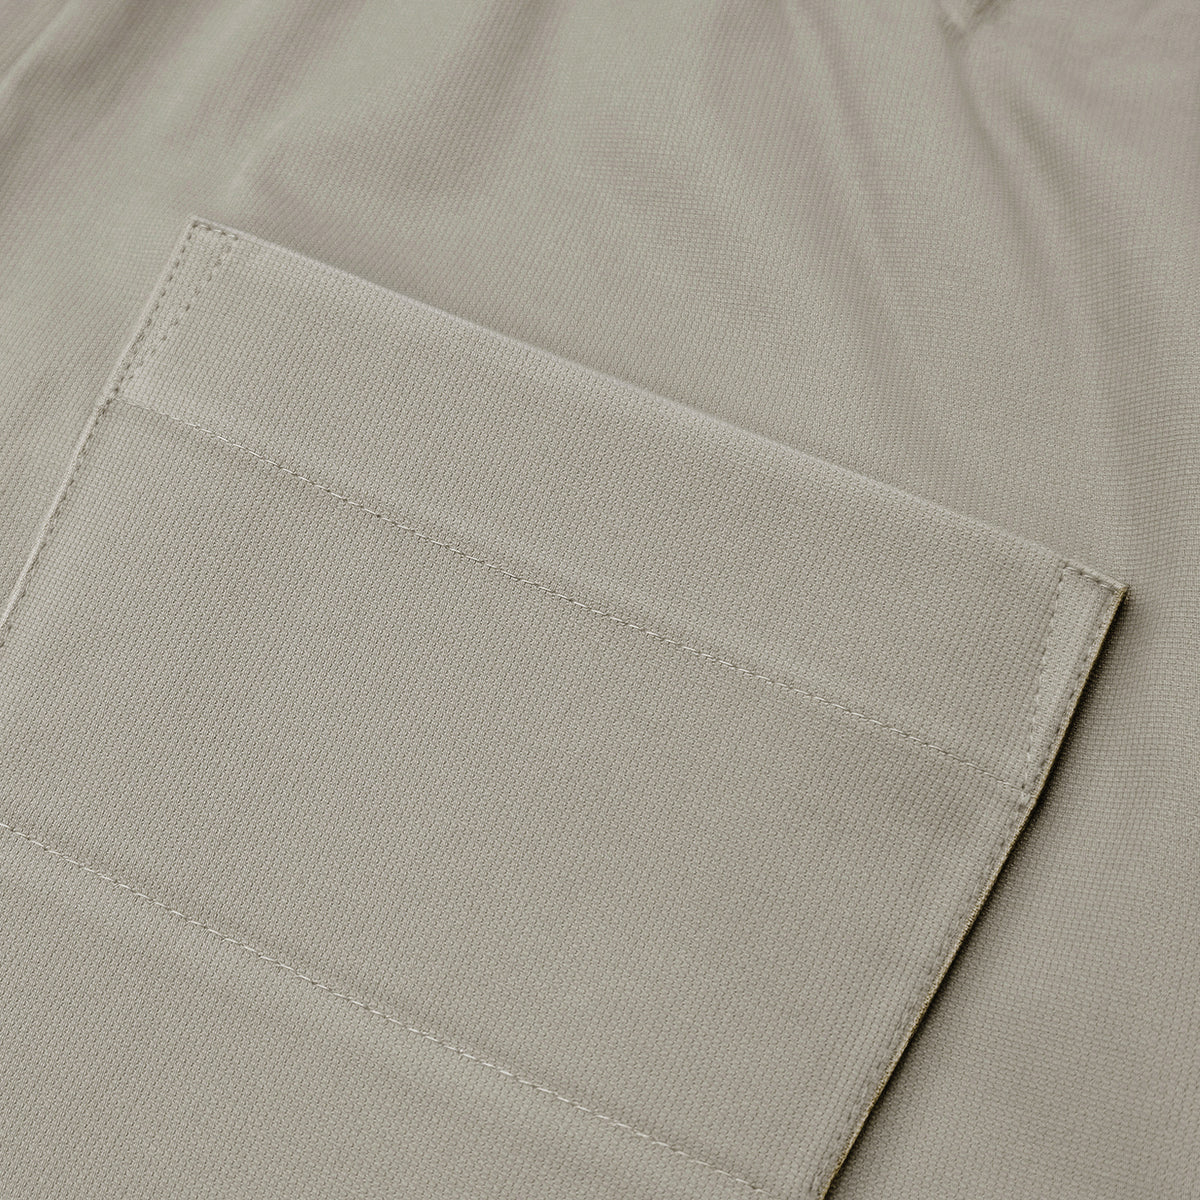 Asymmetric Utility Pants [Khaki]